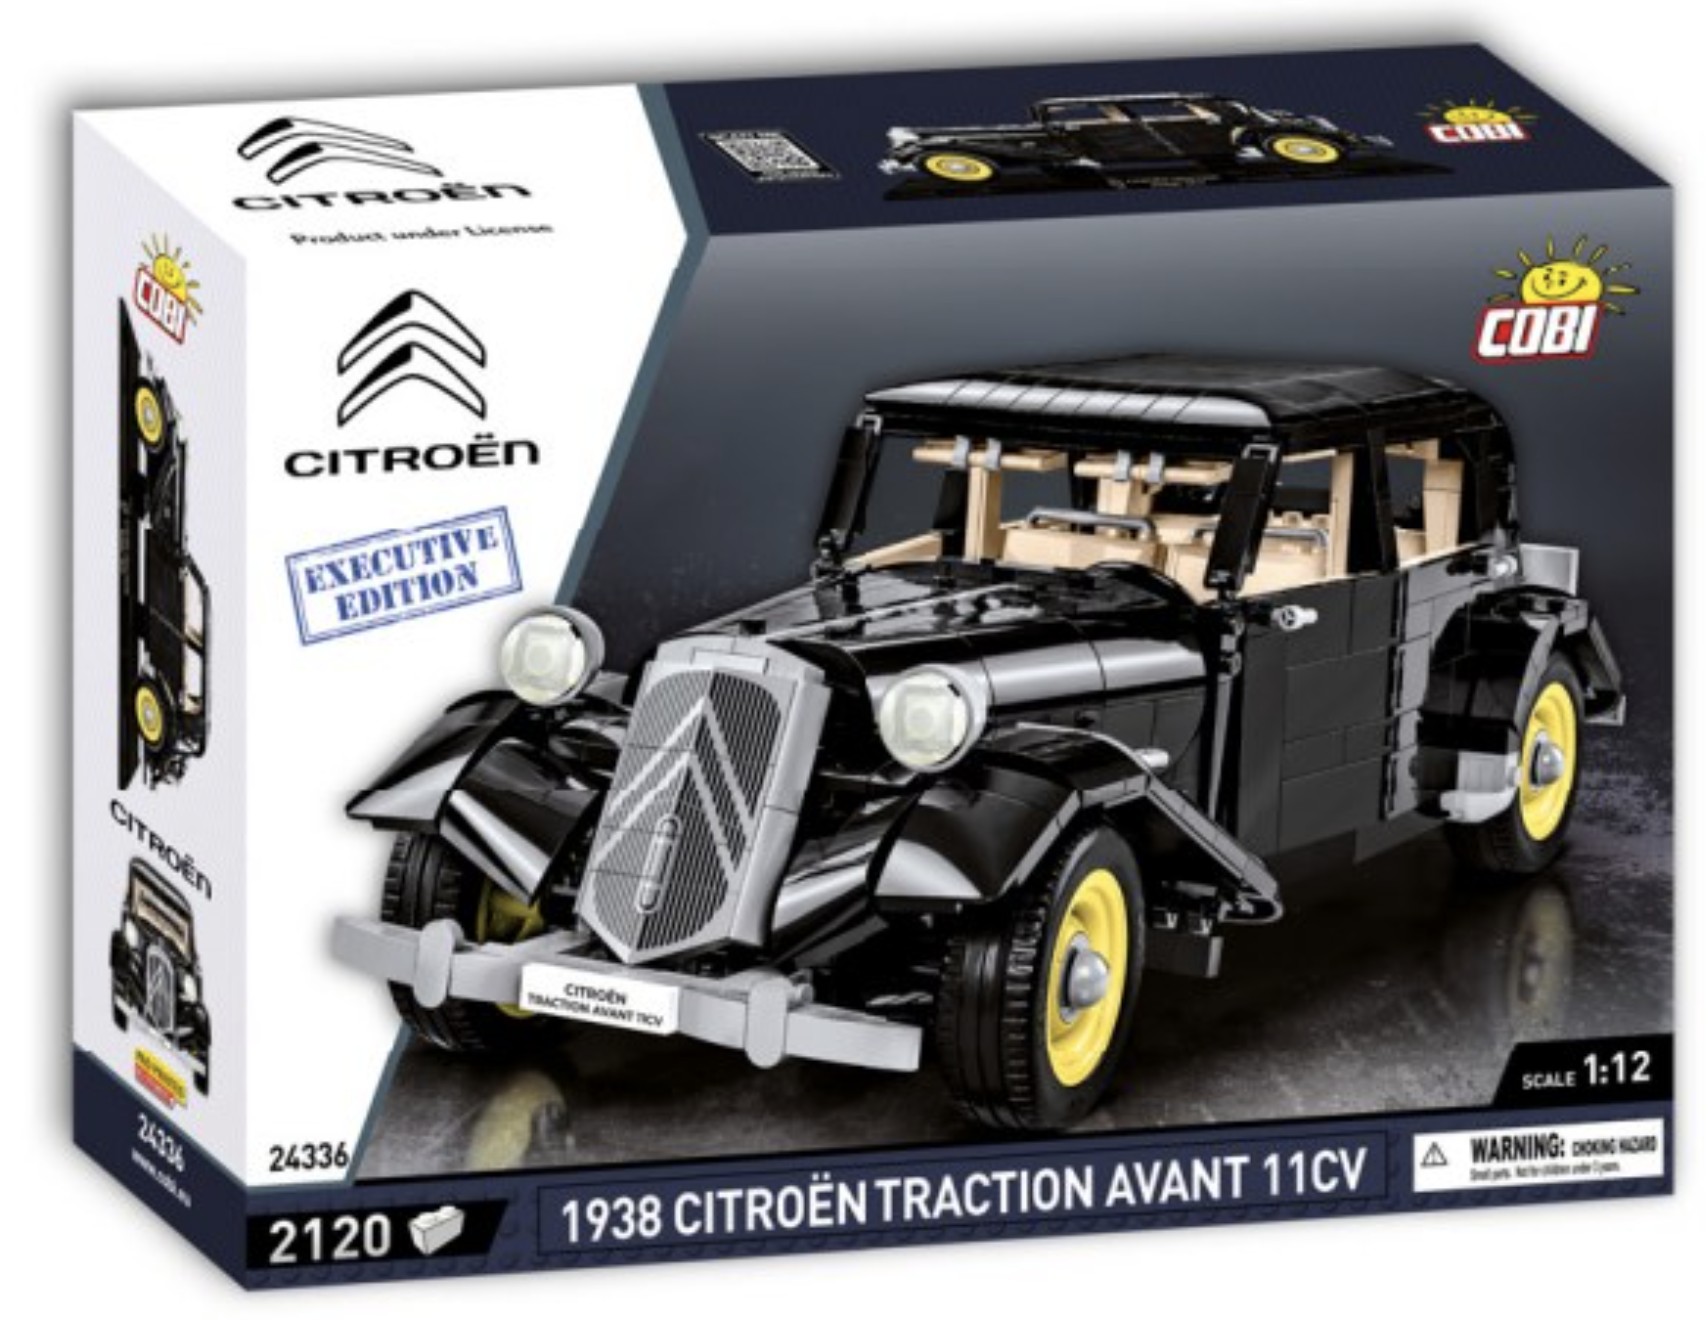 24336 - Citroen Traction Avant 11CV 1938 - Executive Edition